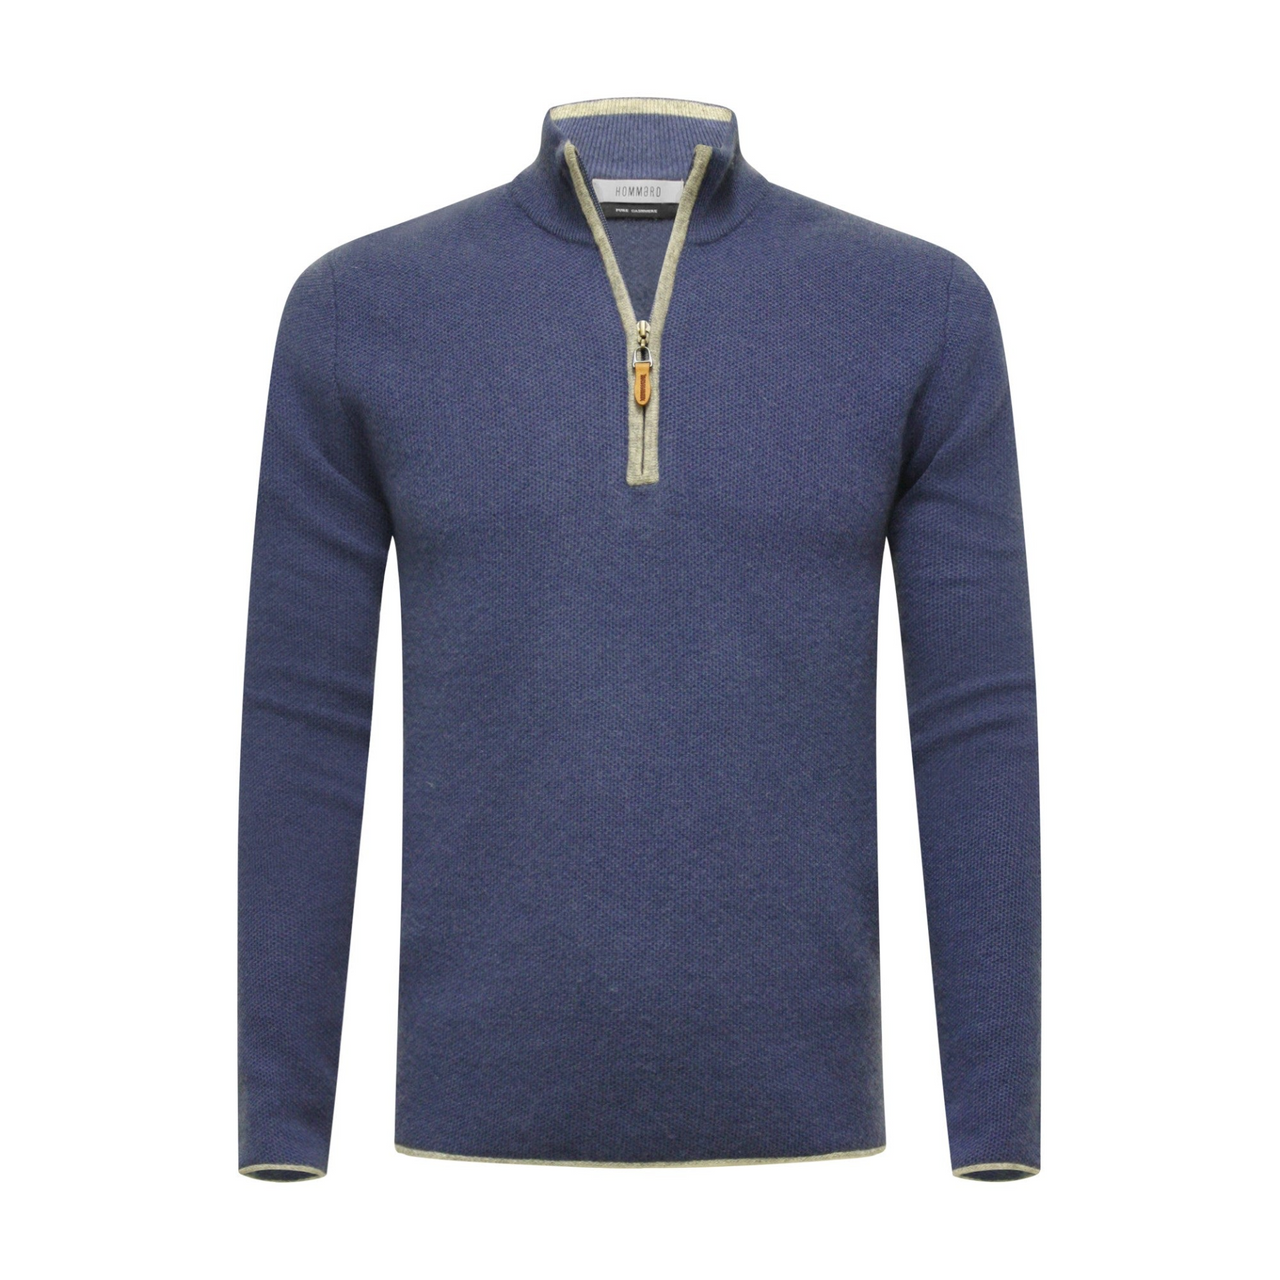 Jeans Grey Cashmere Zip Neck Sweater Verbier in pique stitch